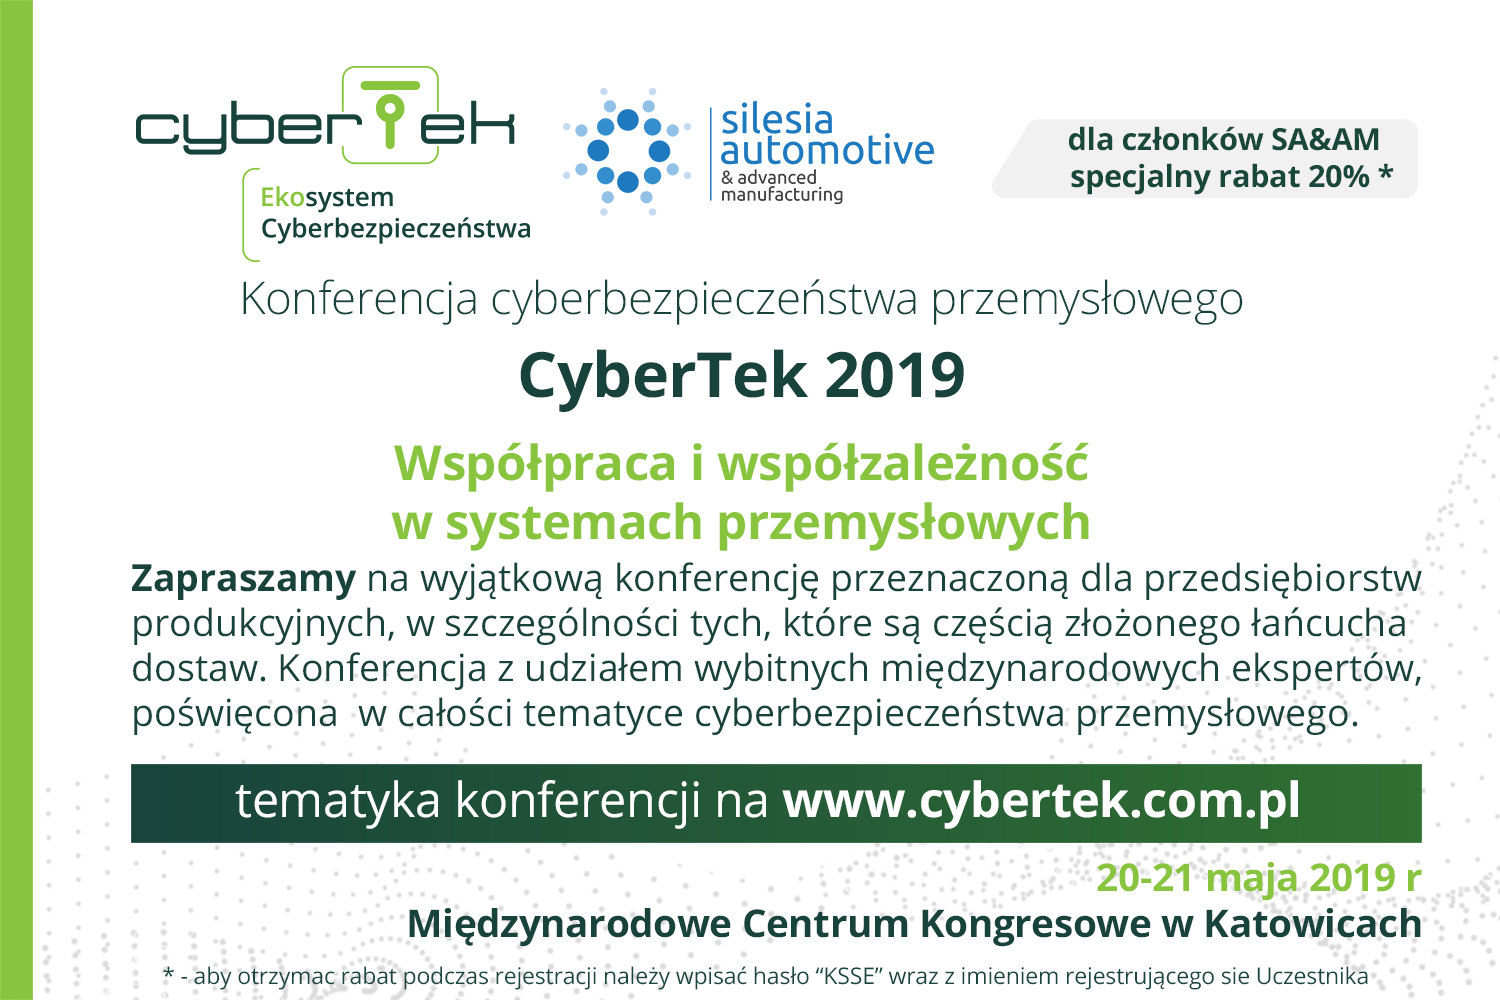 CyberTek 2019 zaproszenie Klaster Siesia Automotive